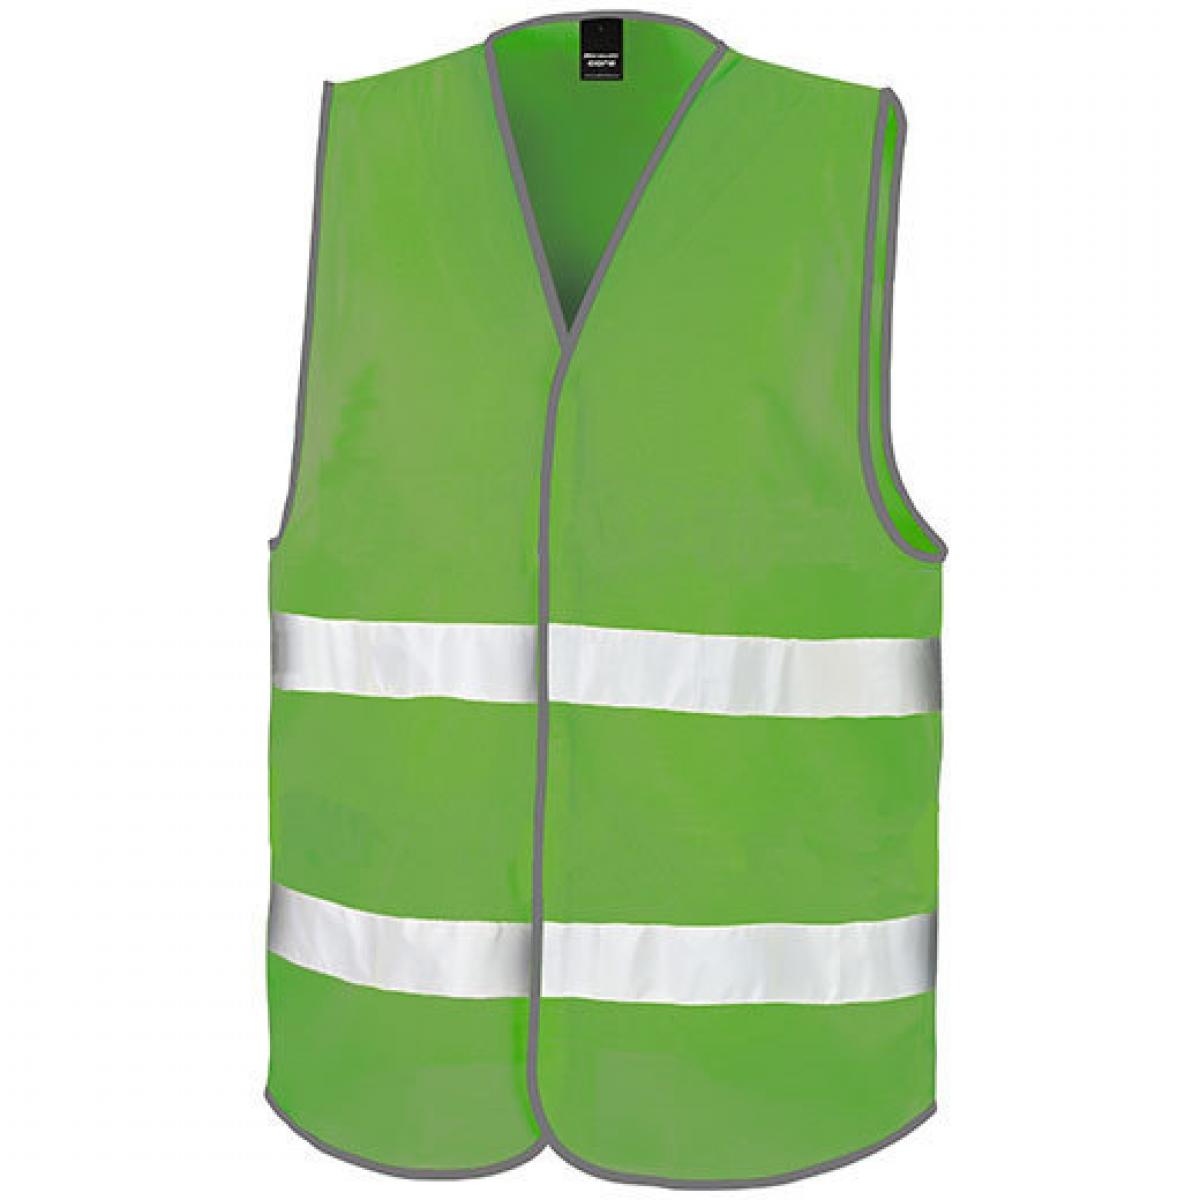 Hersteller: Result Core Herstellernummer: R200X Artikelbezeichnung: Motorist Safety Vest / ISOEN20471:2013, Klasse 2 Farbe: Lime